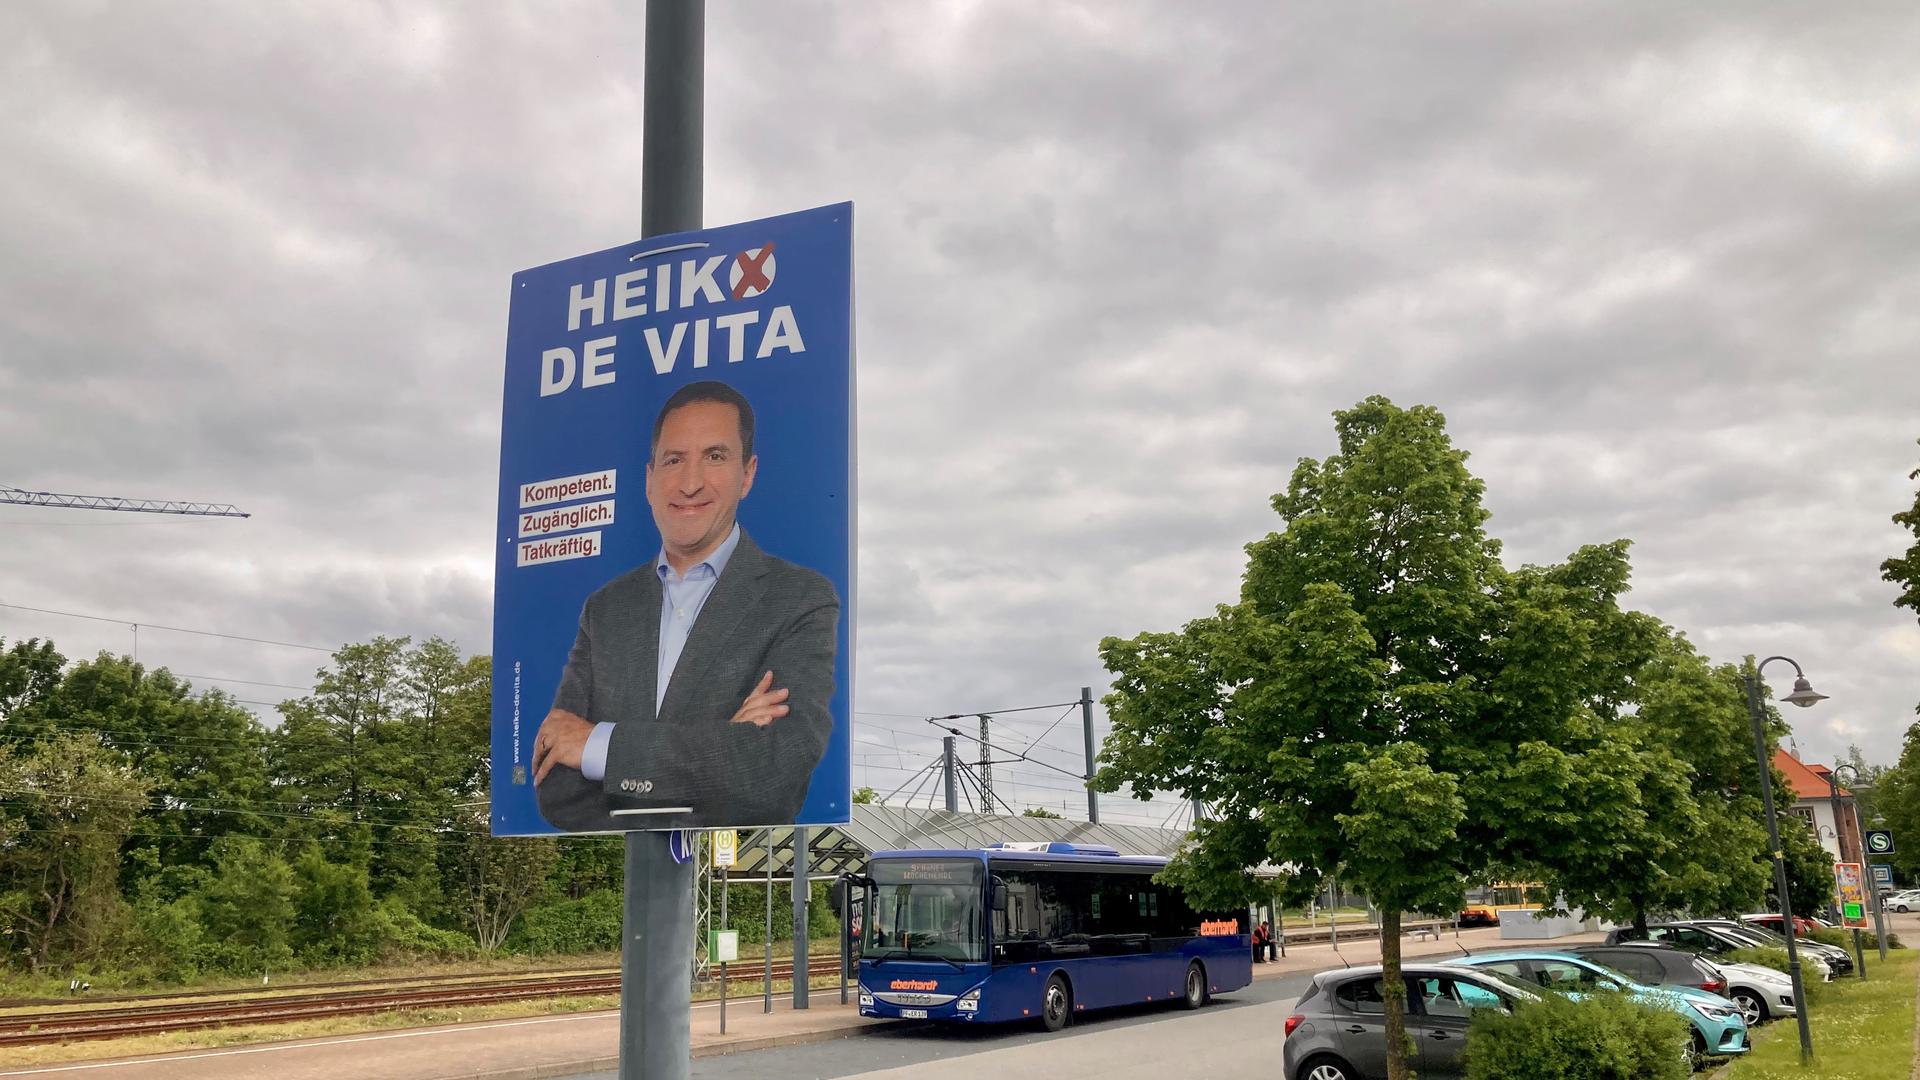 Dunkle Wolken ziehen auf: Heiko De Vitas Wahlplakate in Remchingen hängen nun sinnlos herum. Der Kandidat wird nich auf dem Wahlzettel stehen.